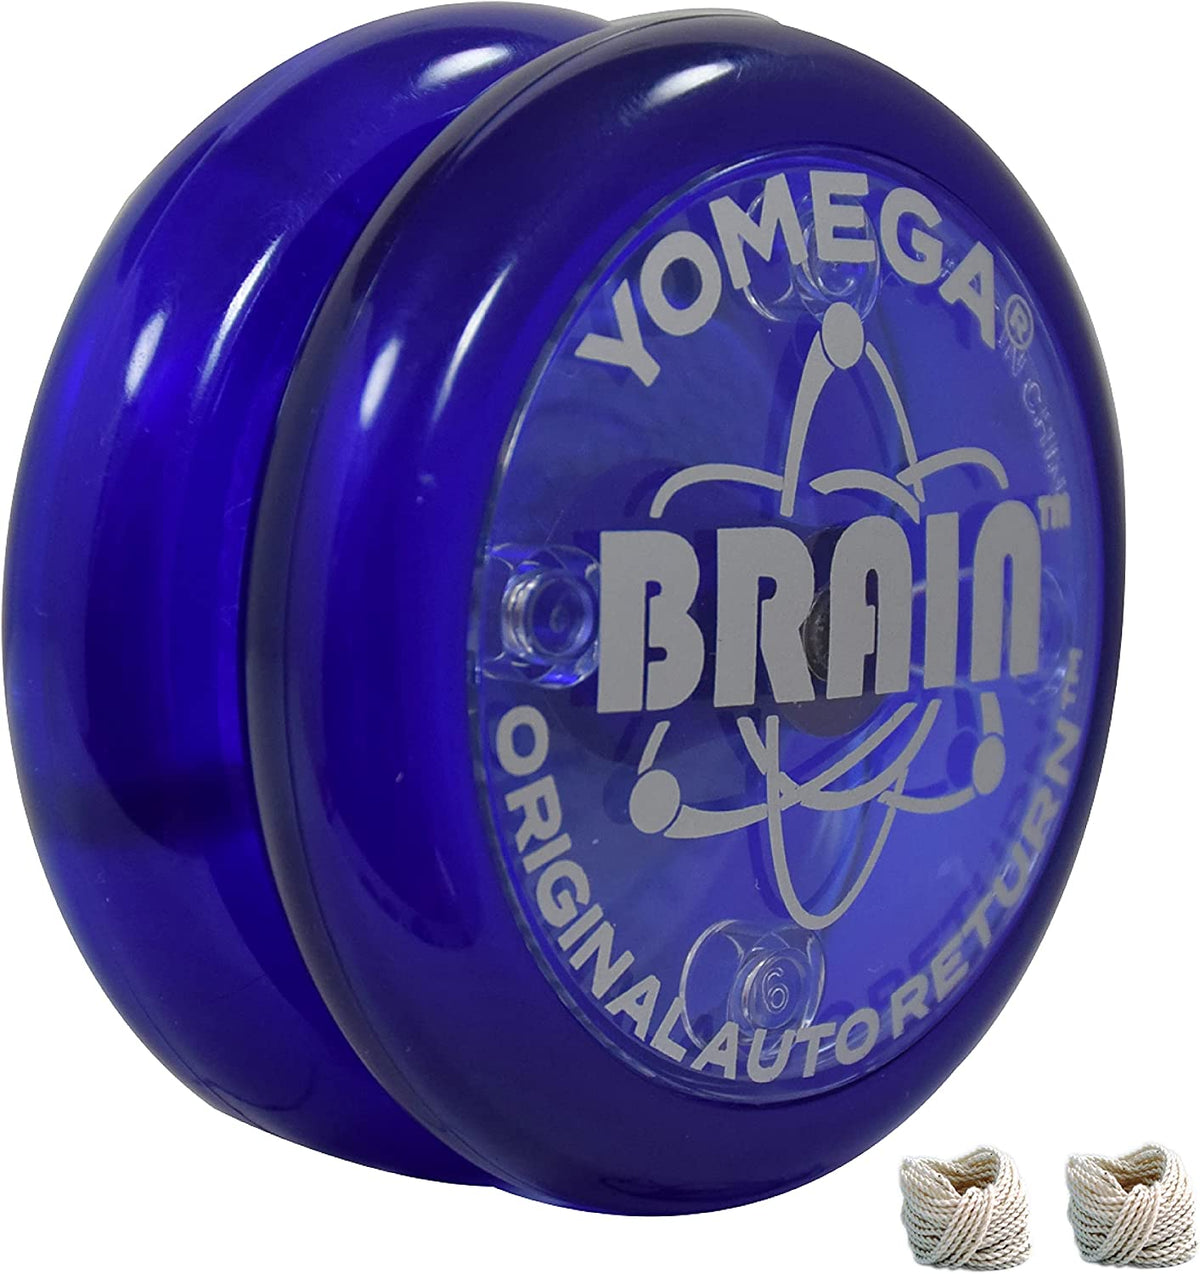 Yomega Brain YoYo